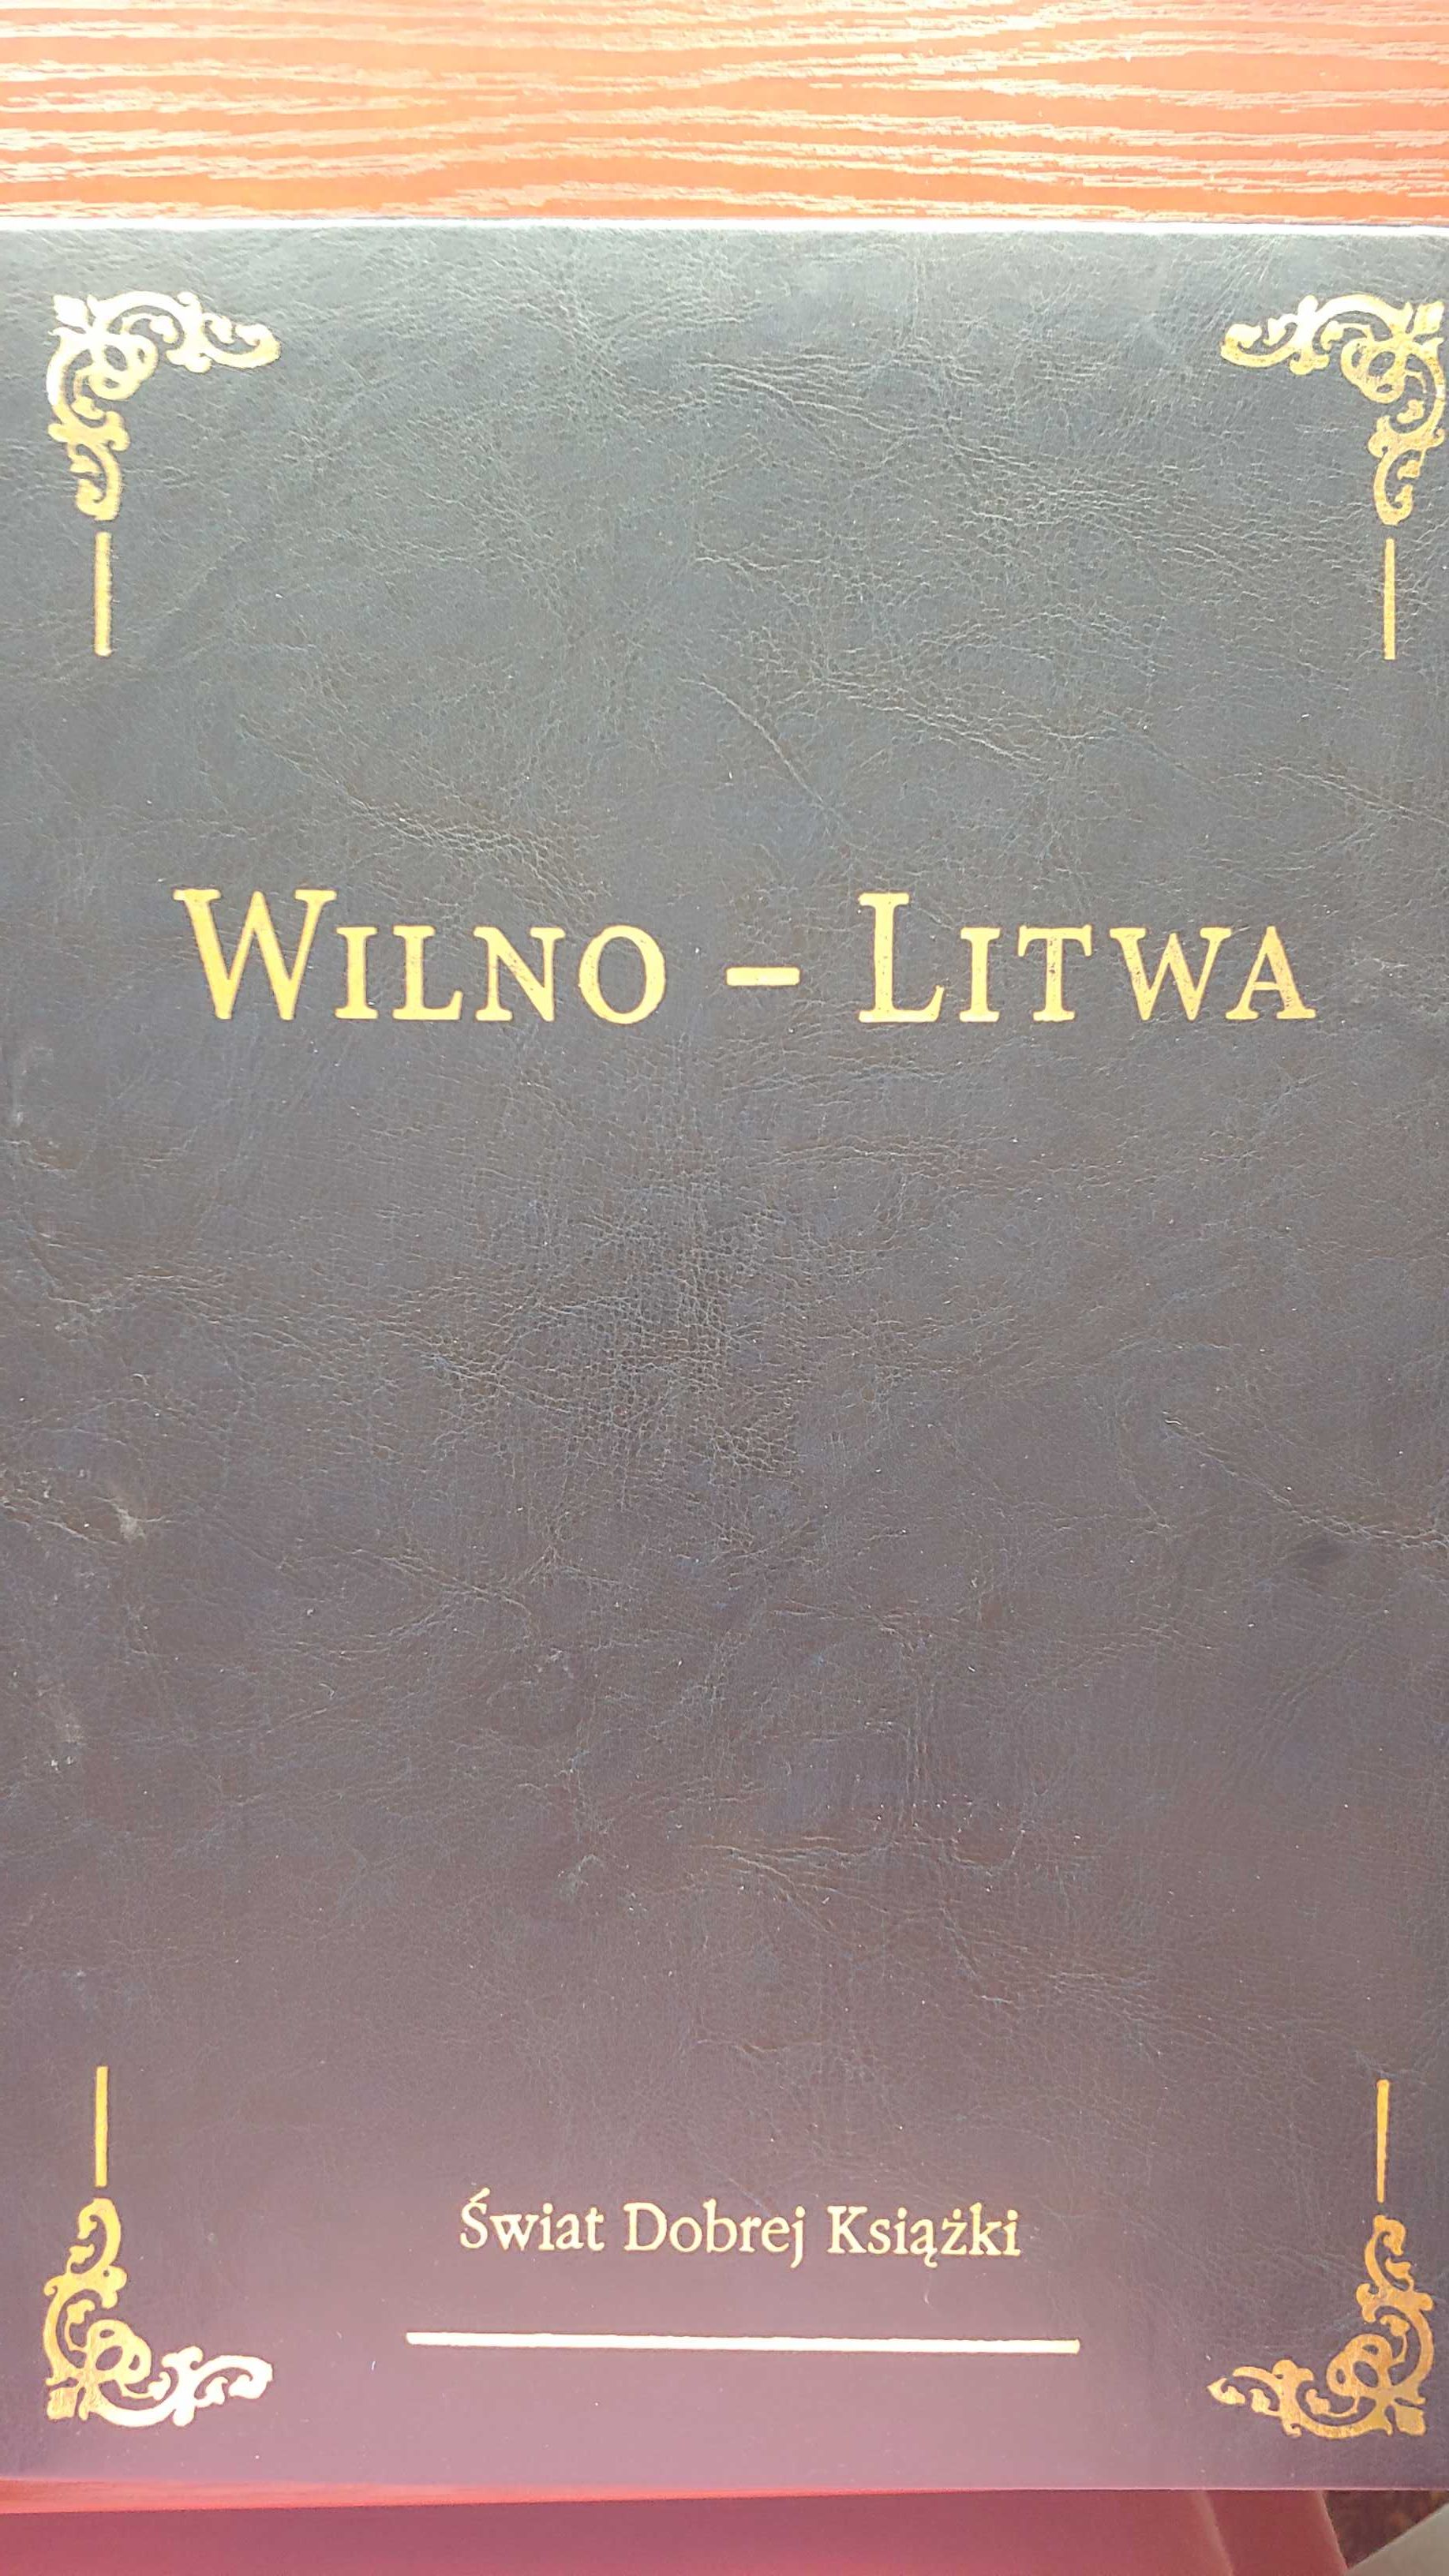 Album Wilno Litwa